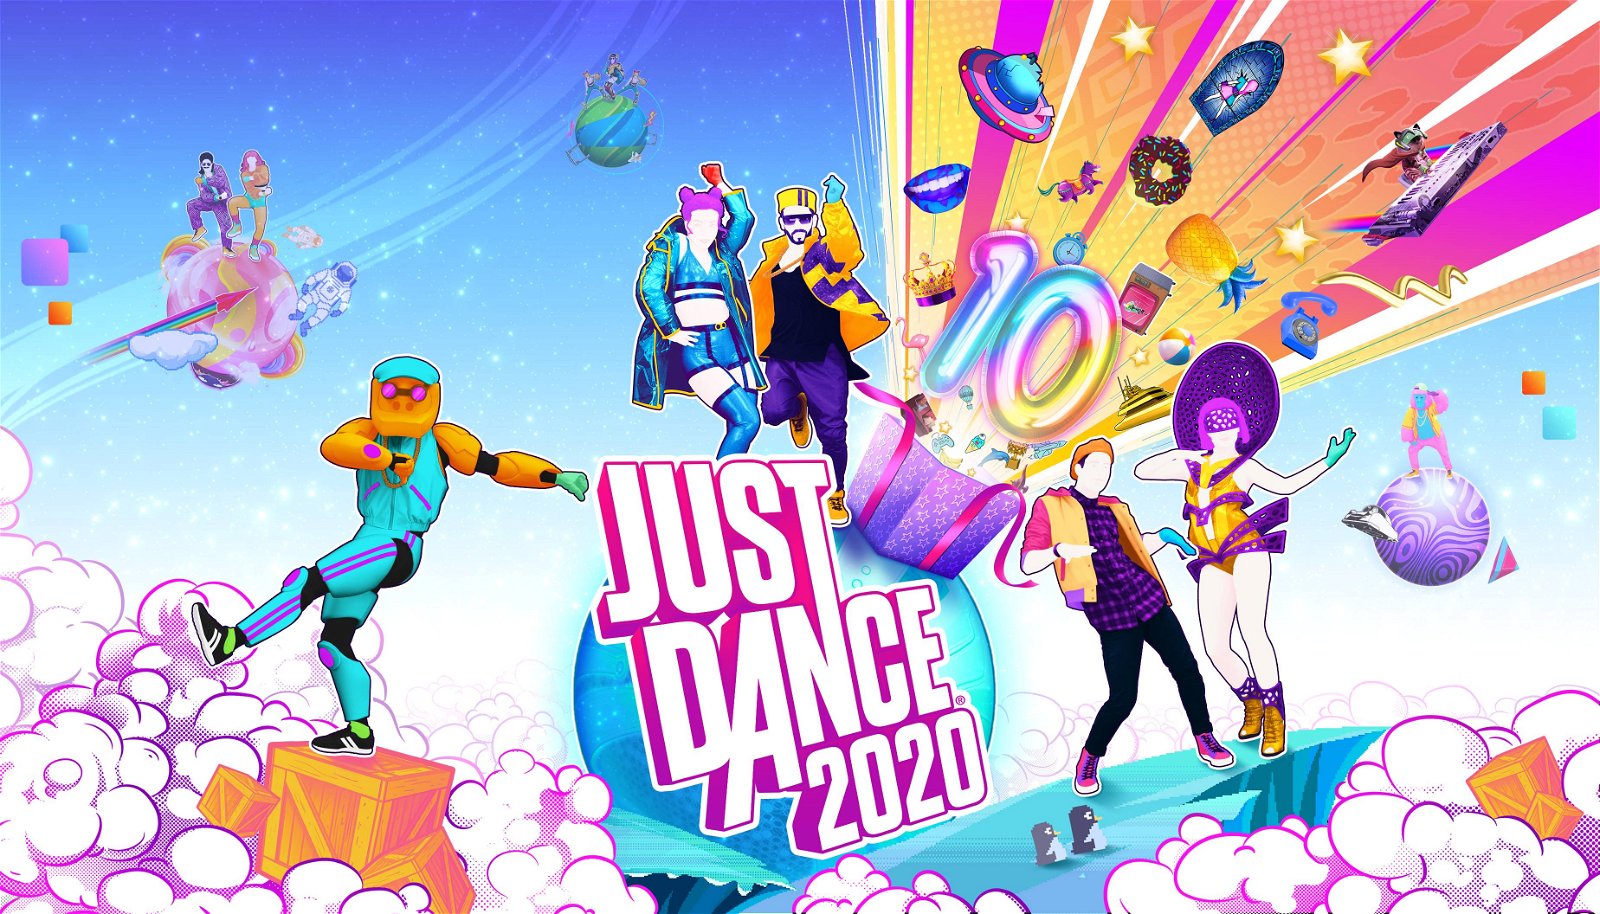 Just Dance 2020 festeggia il decimo anniversario della serie